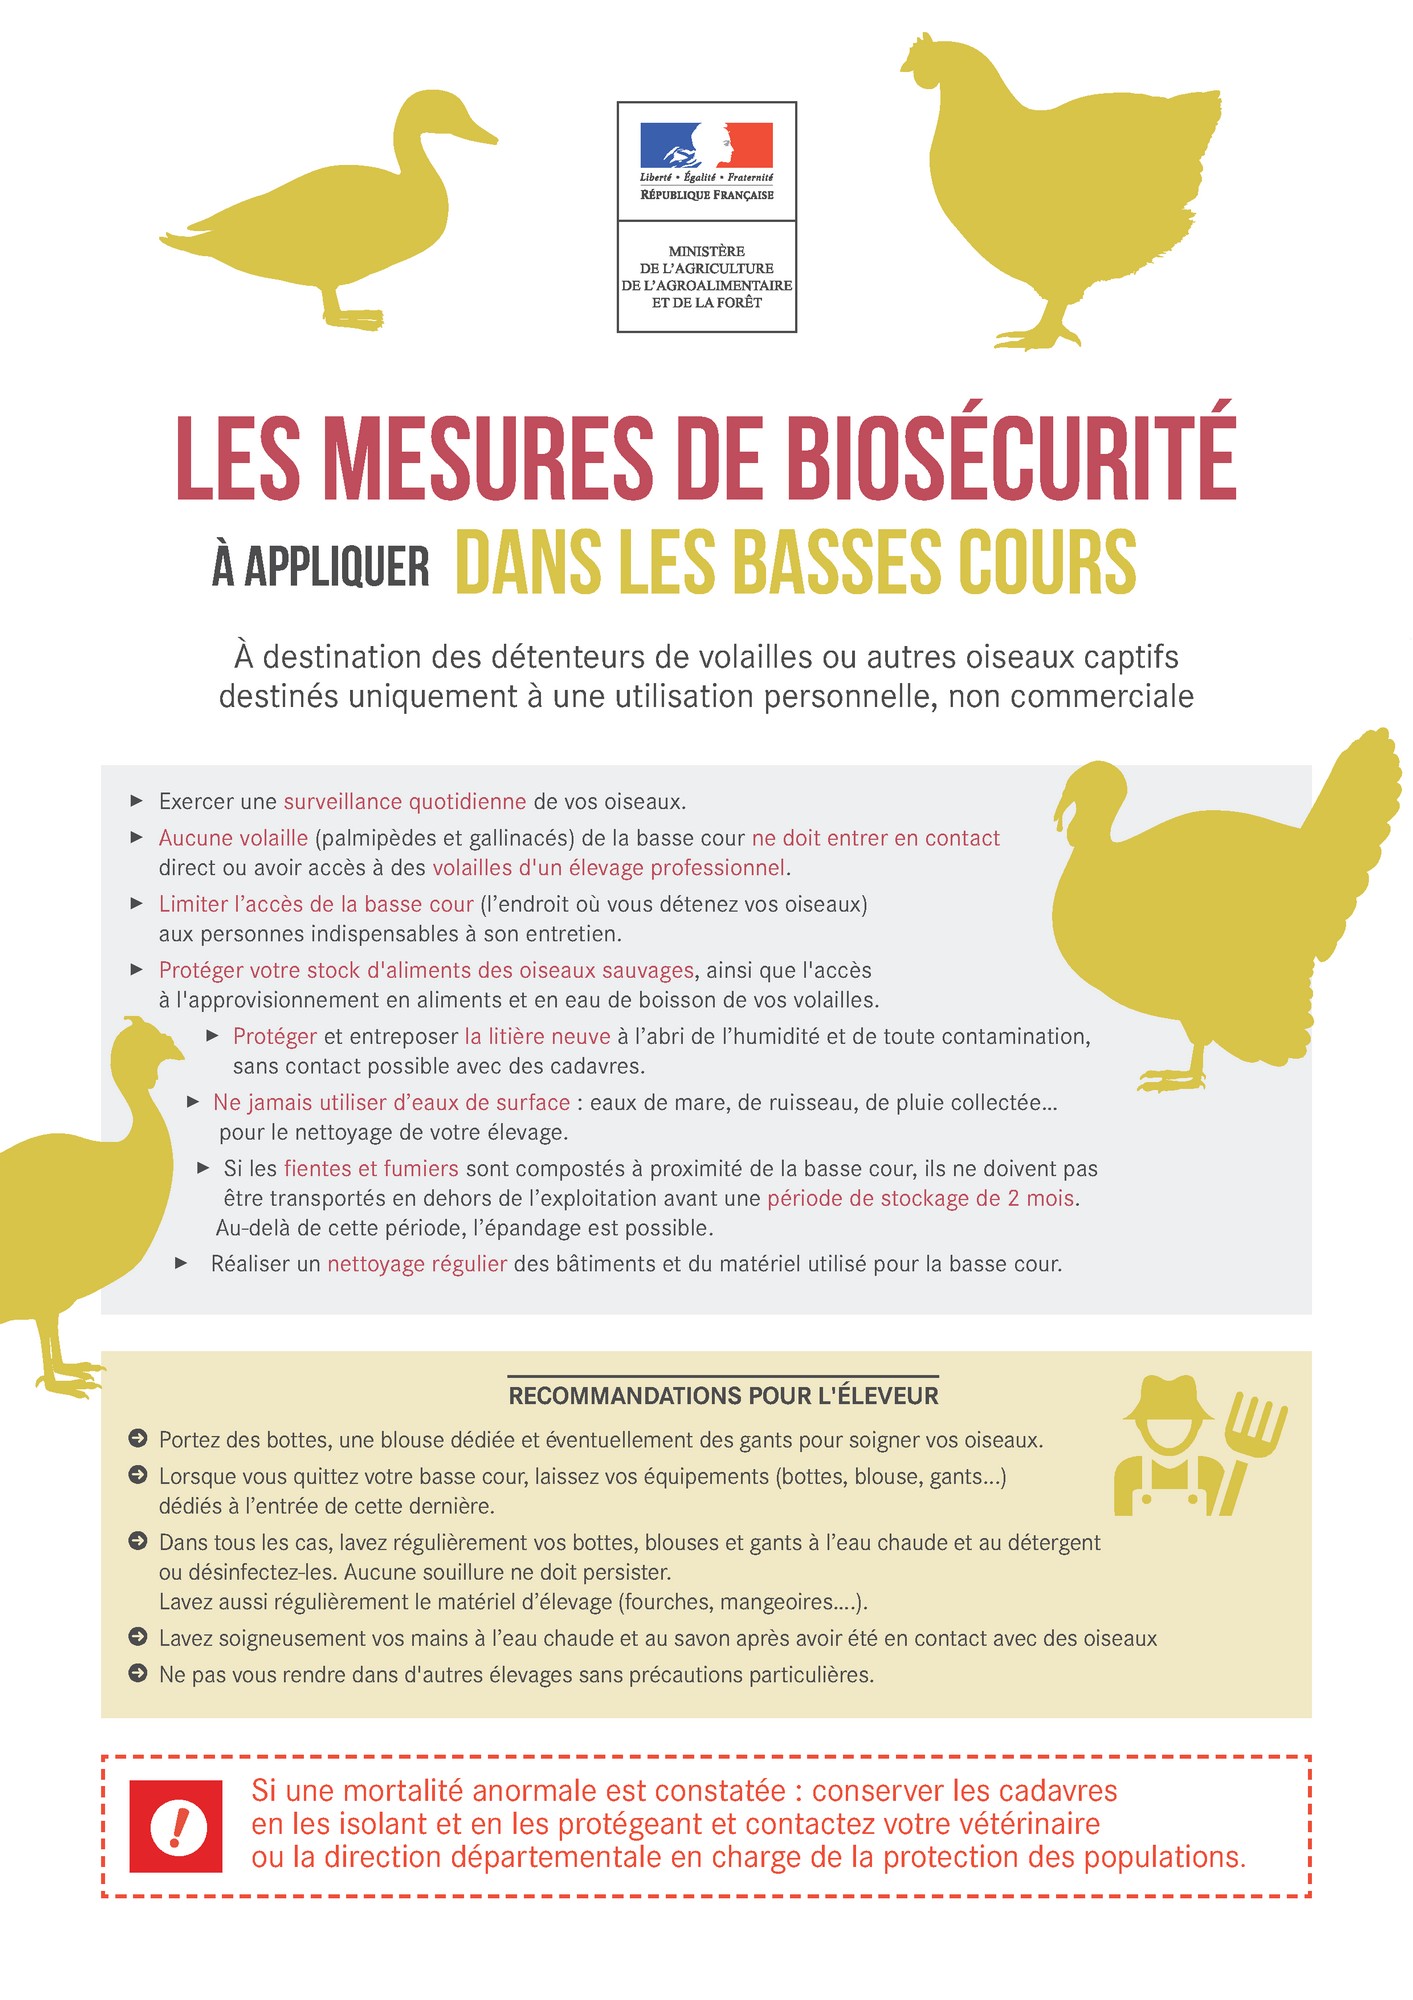 Influenza Aviaire - Biosécurité dans les basses cours.jpg